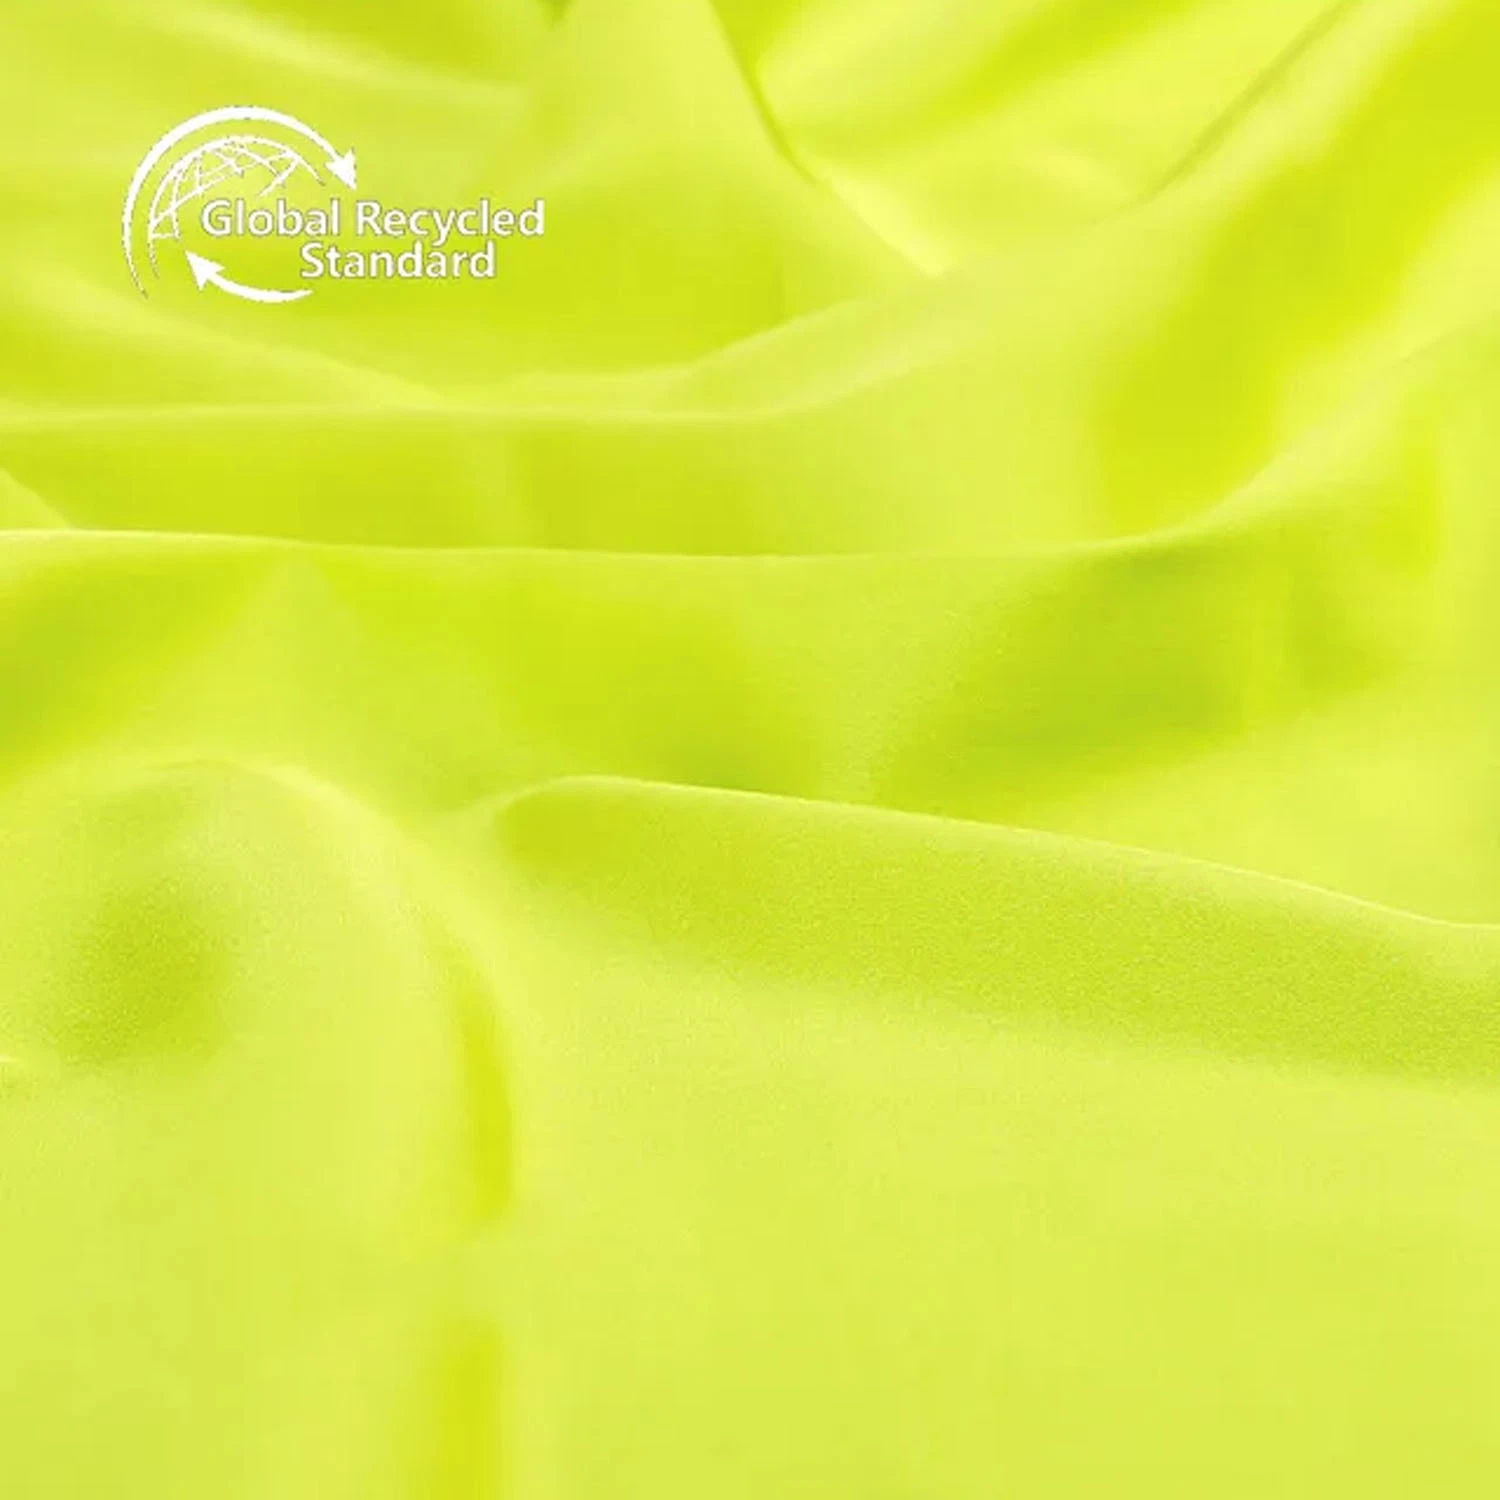 100% Tissu Satin RPET en Microfibre à Tissage Satiné Bleu Recyclé, 106GSM, 120cm de Hauteur, Grande Extensibilité, pour Vêtements Féminins.